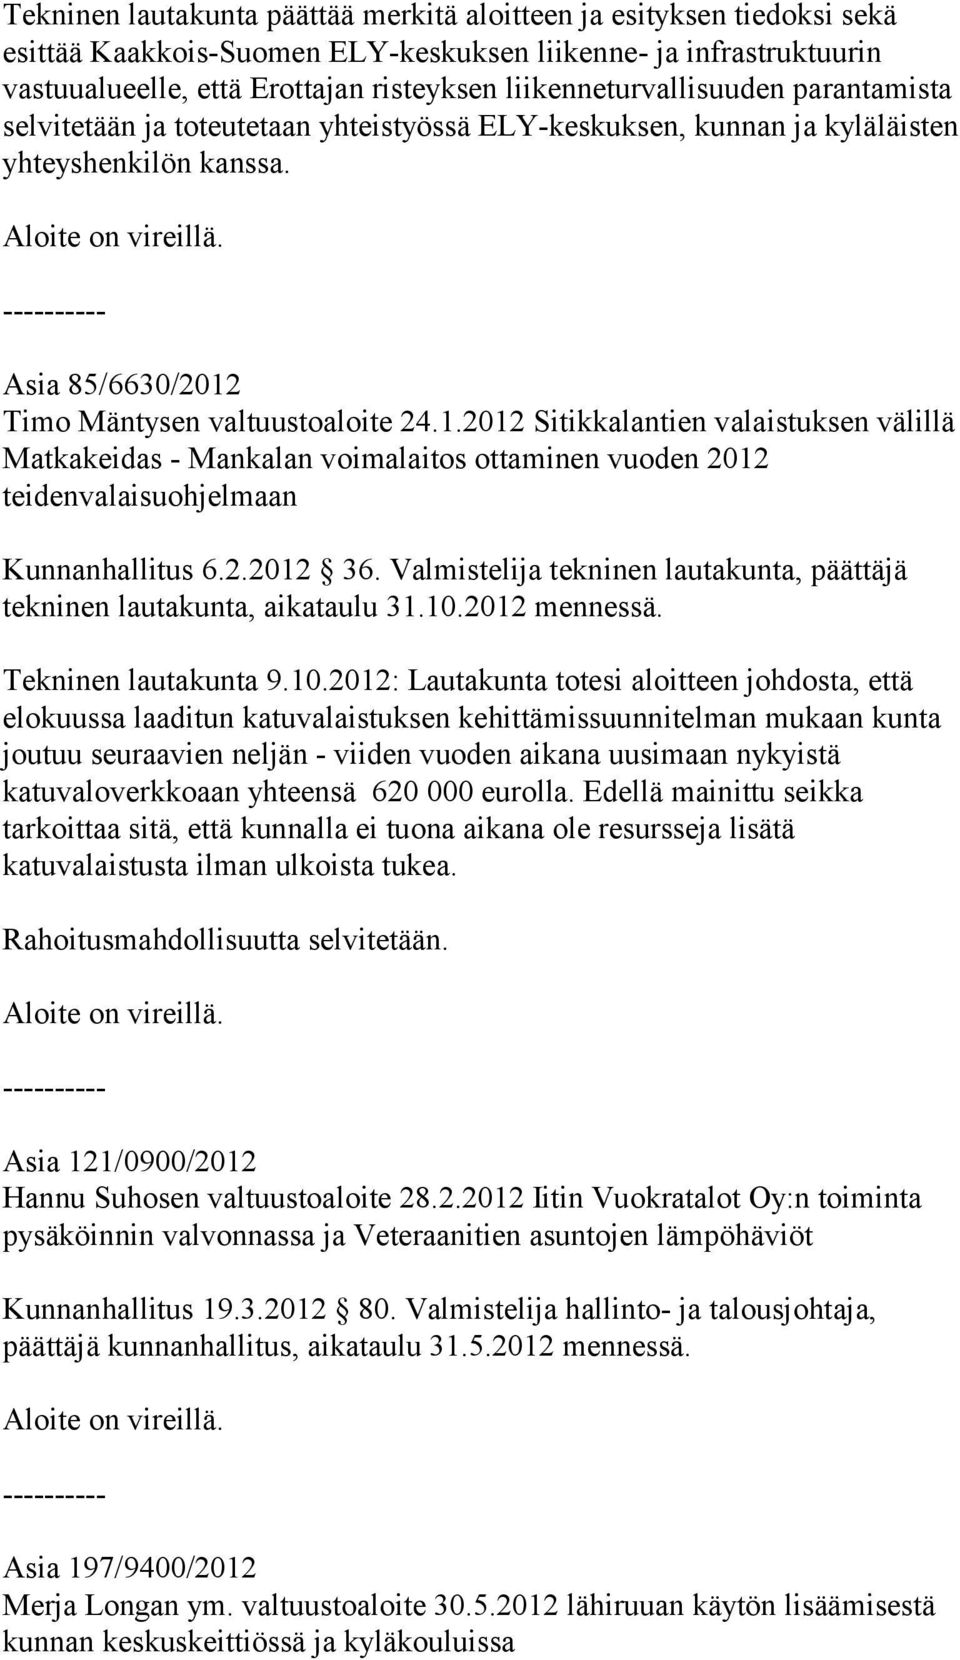 Timo Mäntysen valtuustoaloite 24.1.2012 Sitikkalantien valaistuksen välillä Matkakeidas - Mankalan voimalaitos ottaminen vuoden 2012 teidenvalaisuohjelmaan Kunnanhallitus 6.2.2012 36.